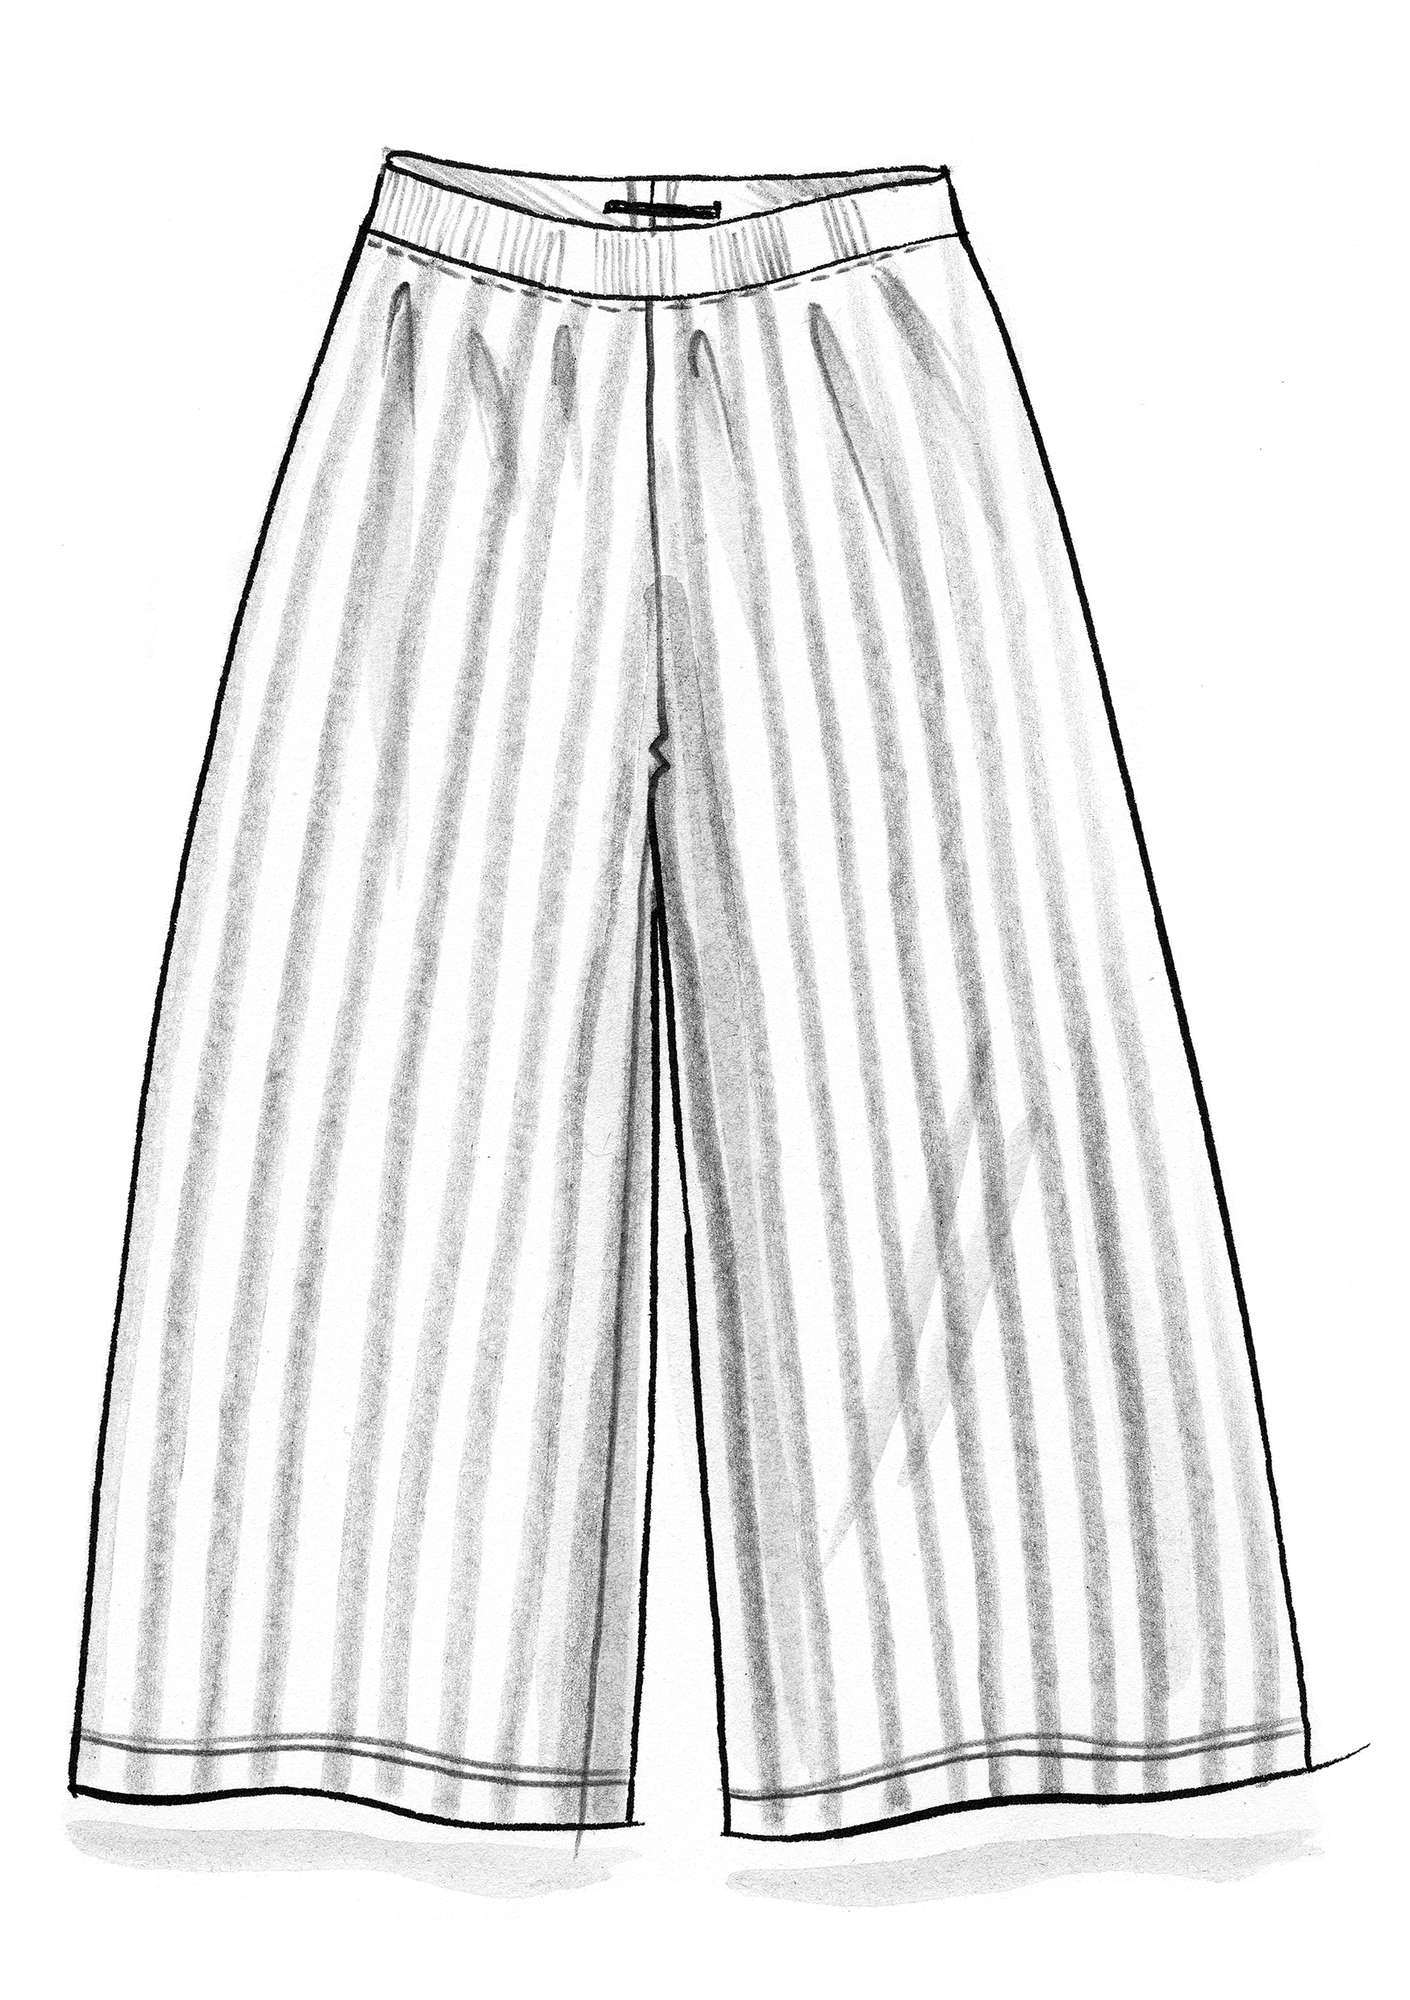 Pantalon en modal/coton/élasthanne rouge agate/figue